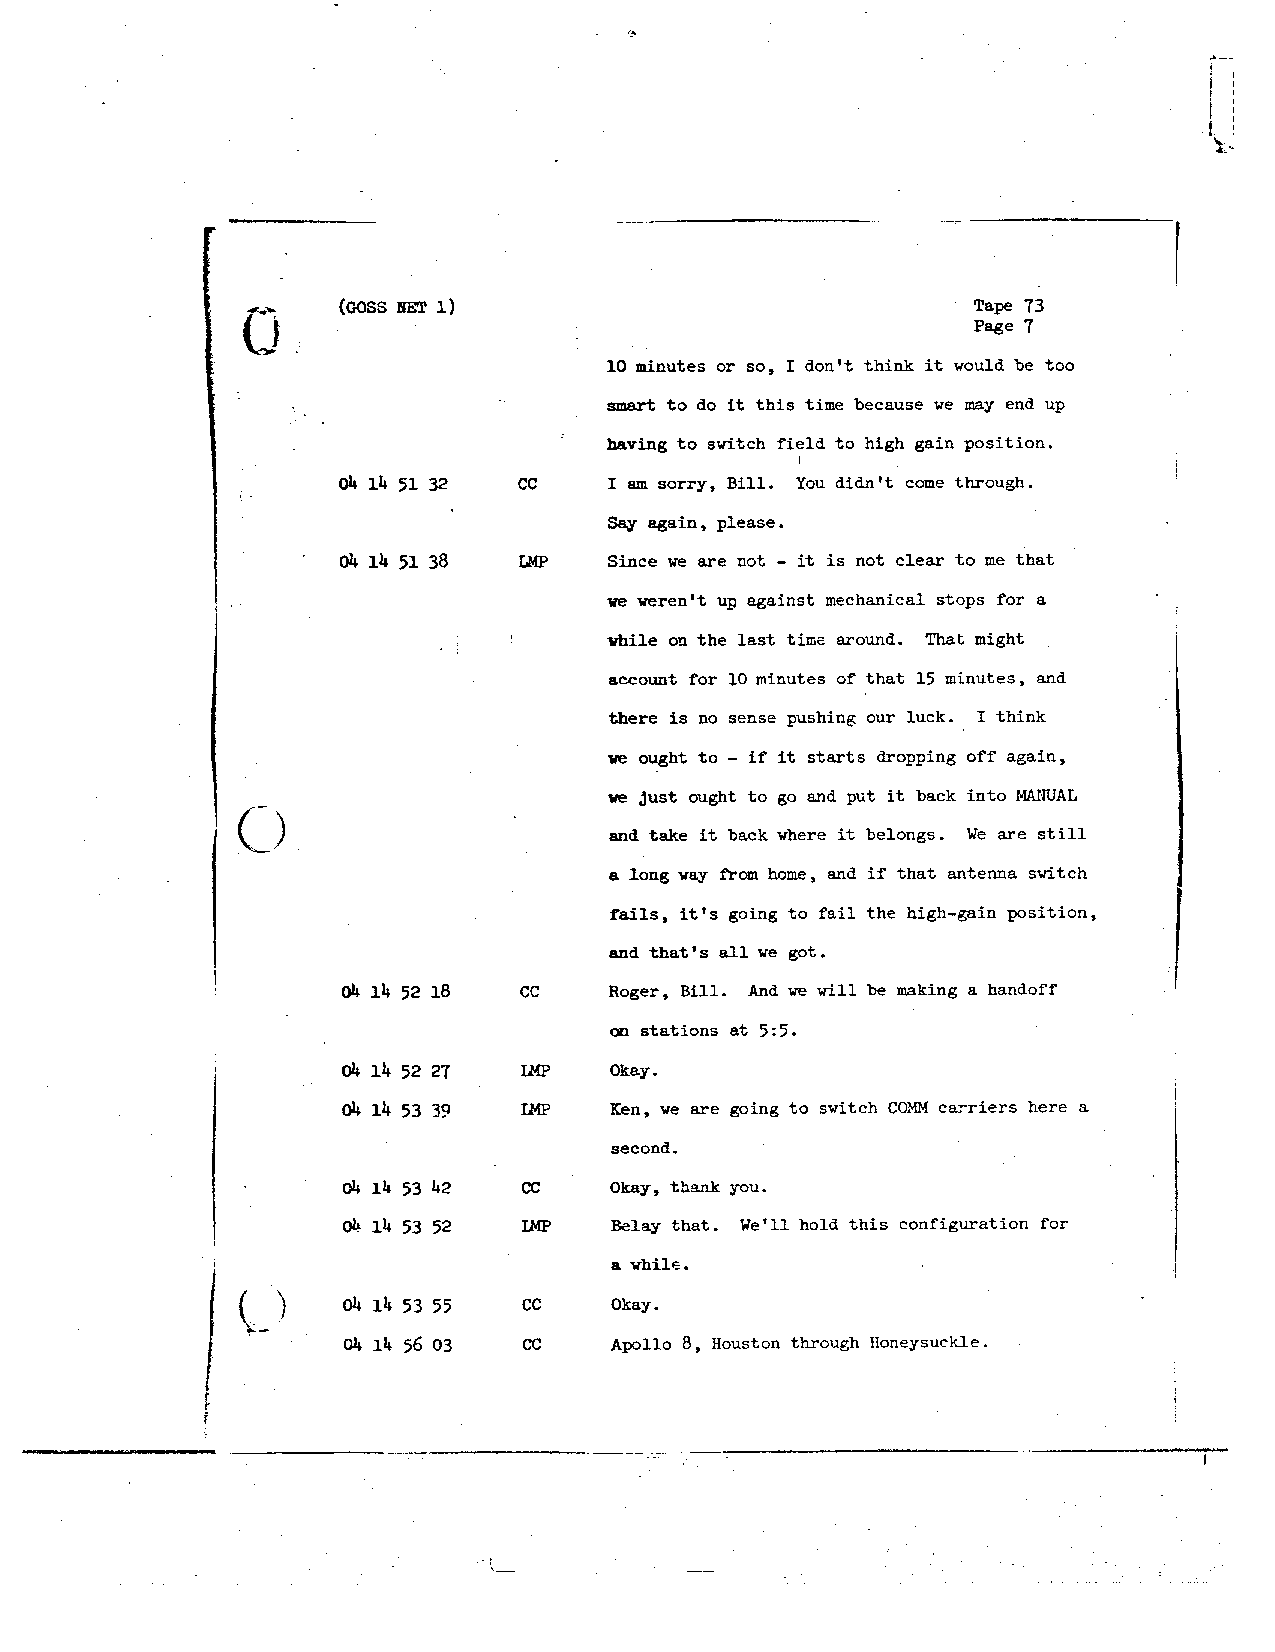 Page 593 of Apollo 8’s original transcript